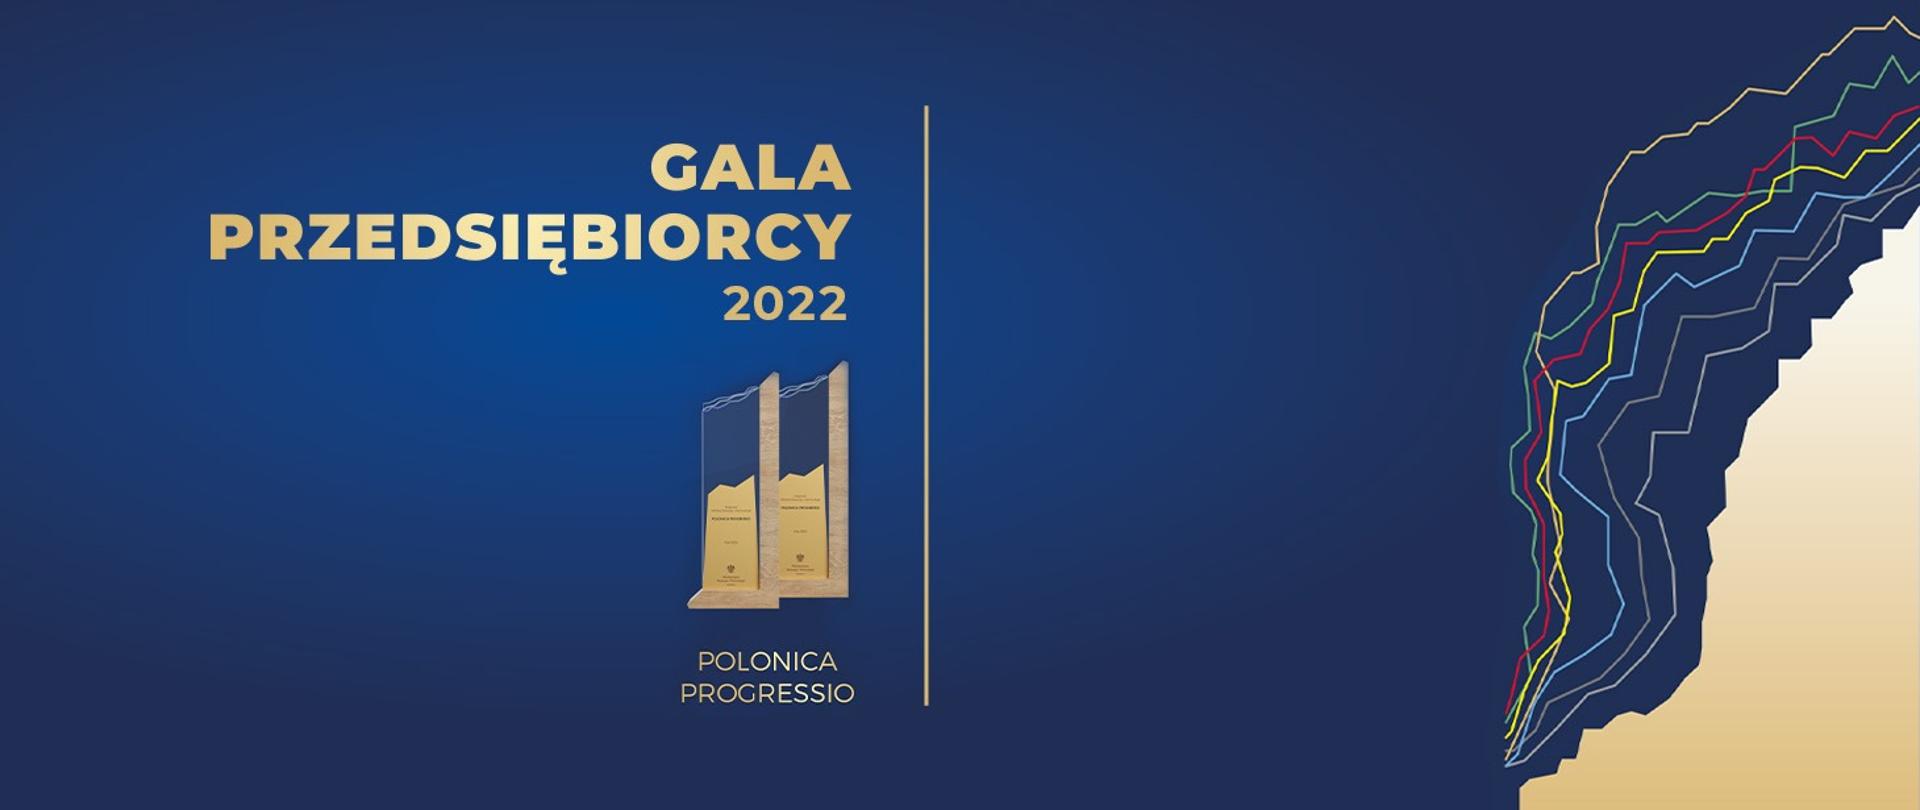 Gala przedsiębiorcy 2022. Na zdjęciu widać nazwę wydarzenia wraz z statuetkami Polonica Progressio na granatowo-złotym tle. 